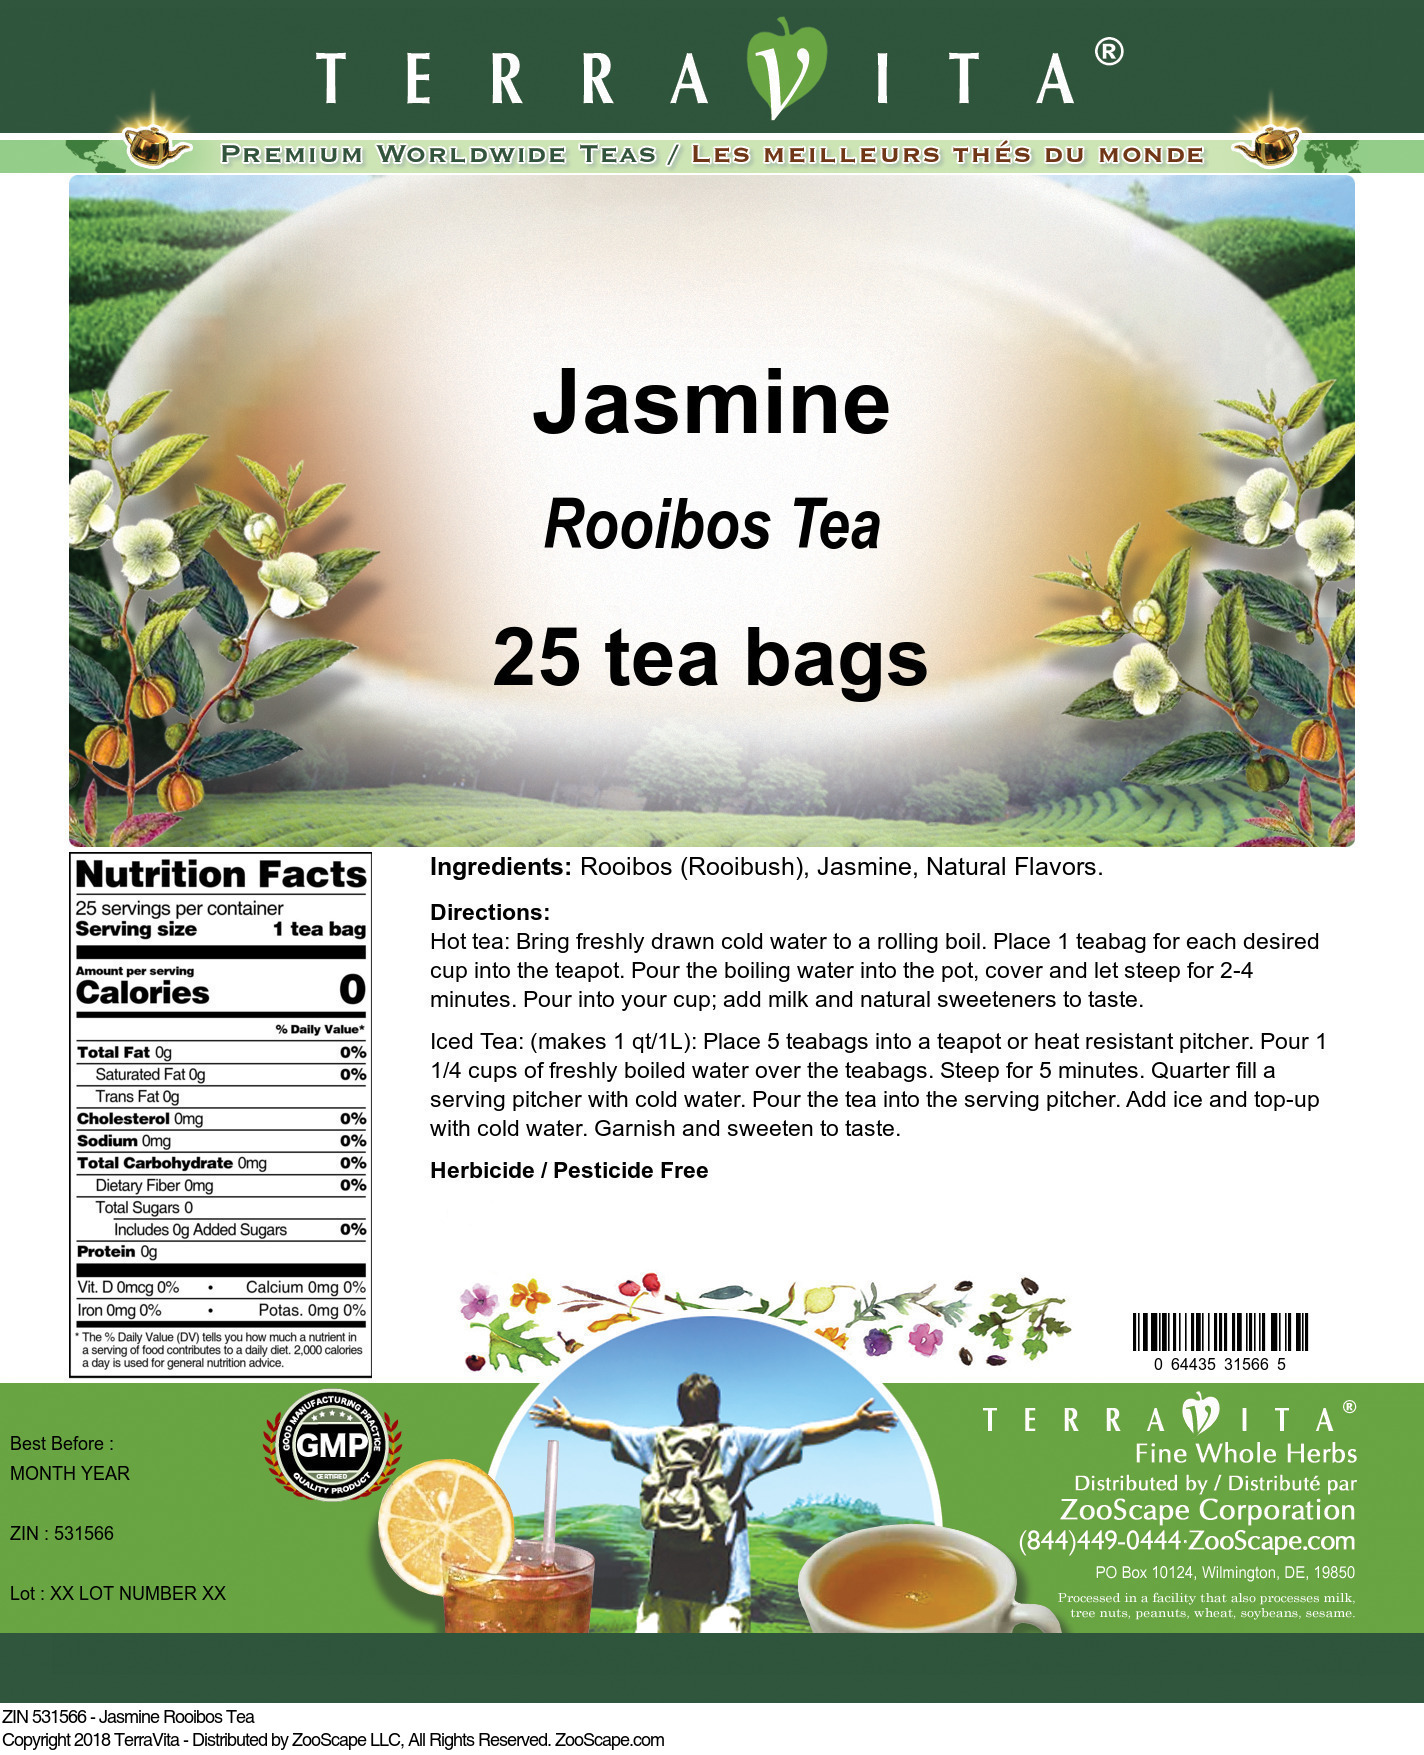 Jasmine Rooibos Tea - Label